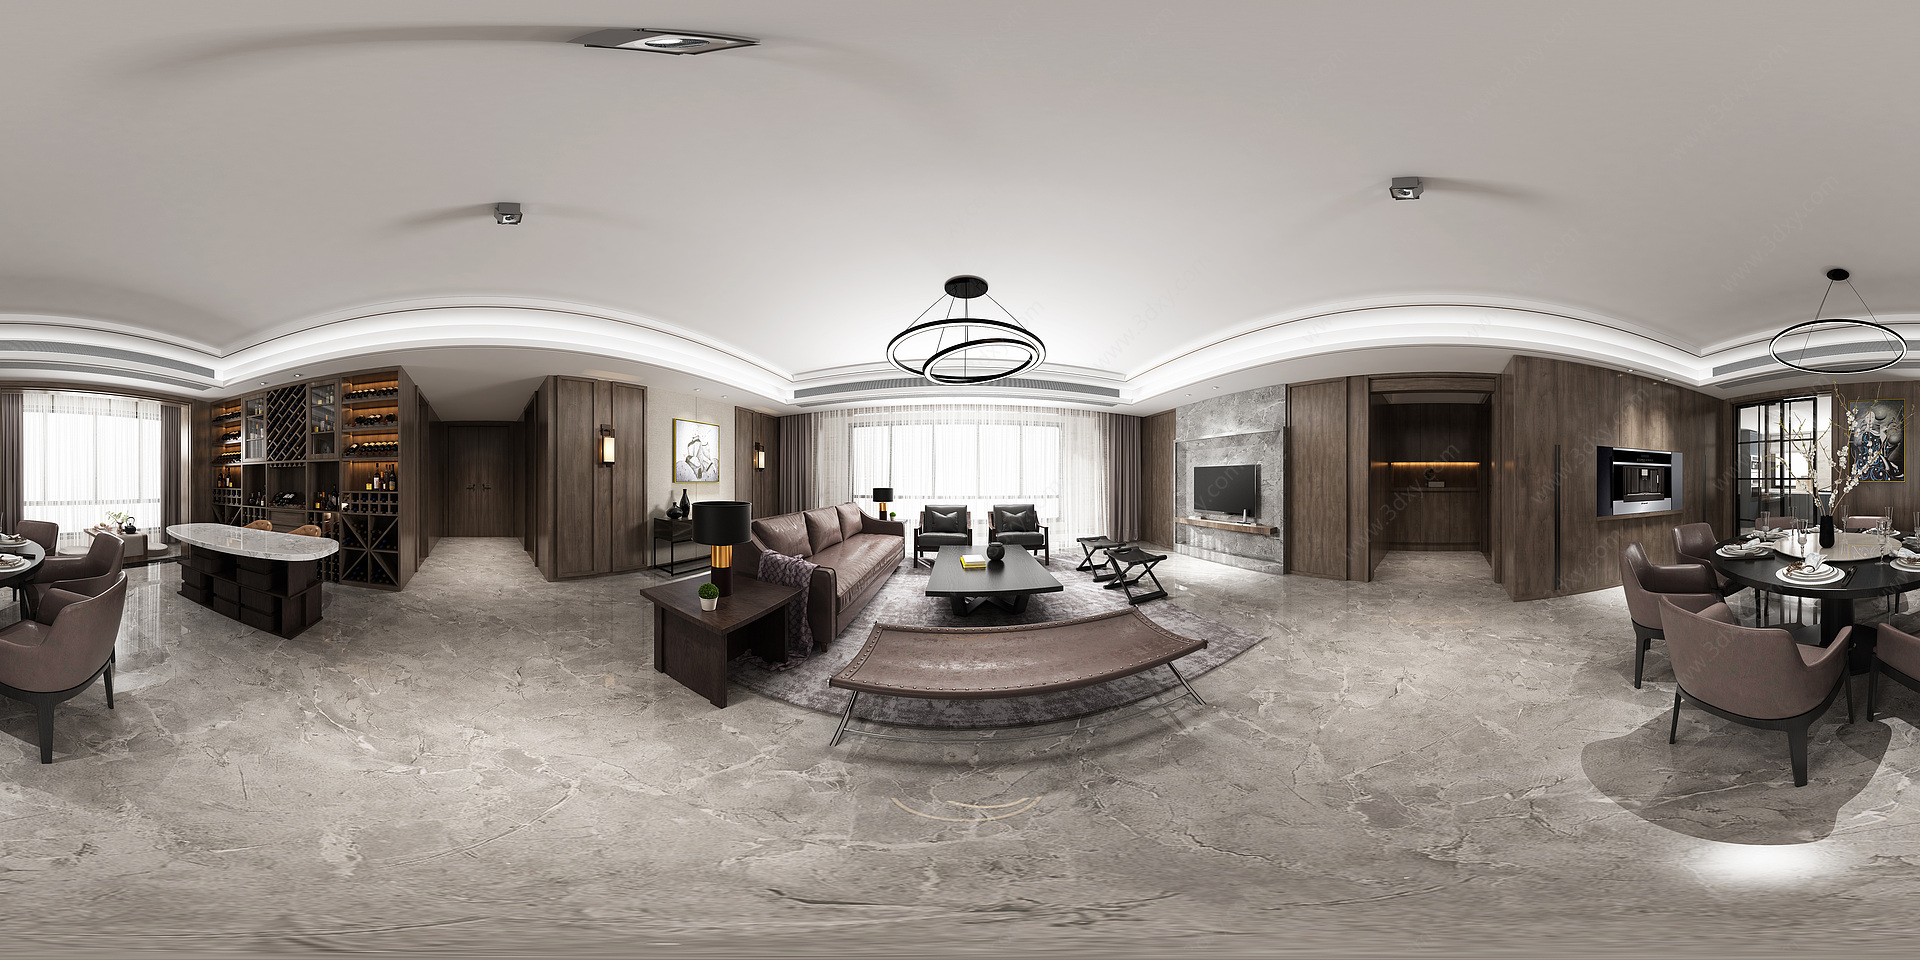 全景模型现代客厅卧室3D模型